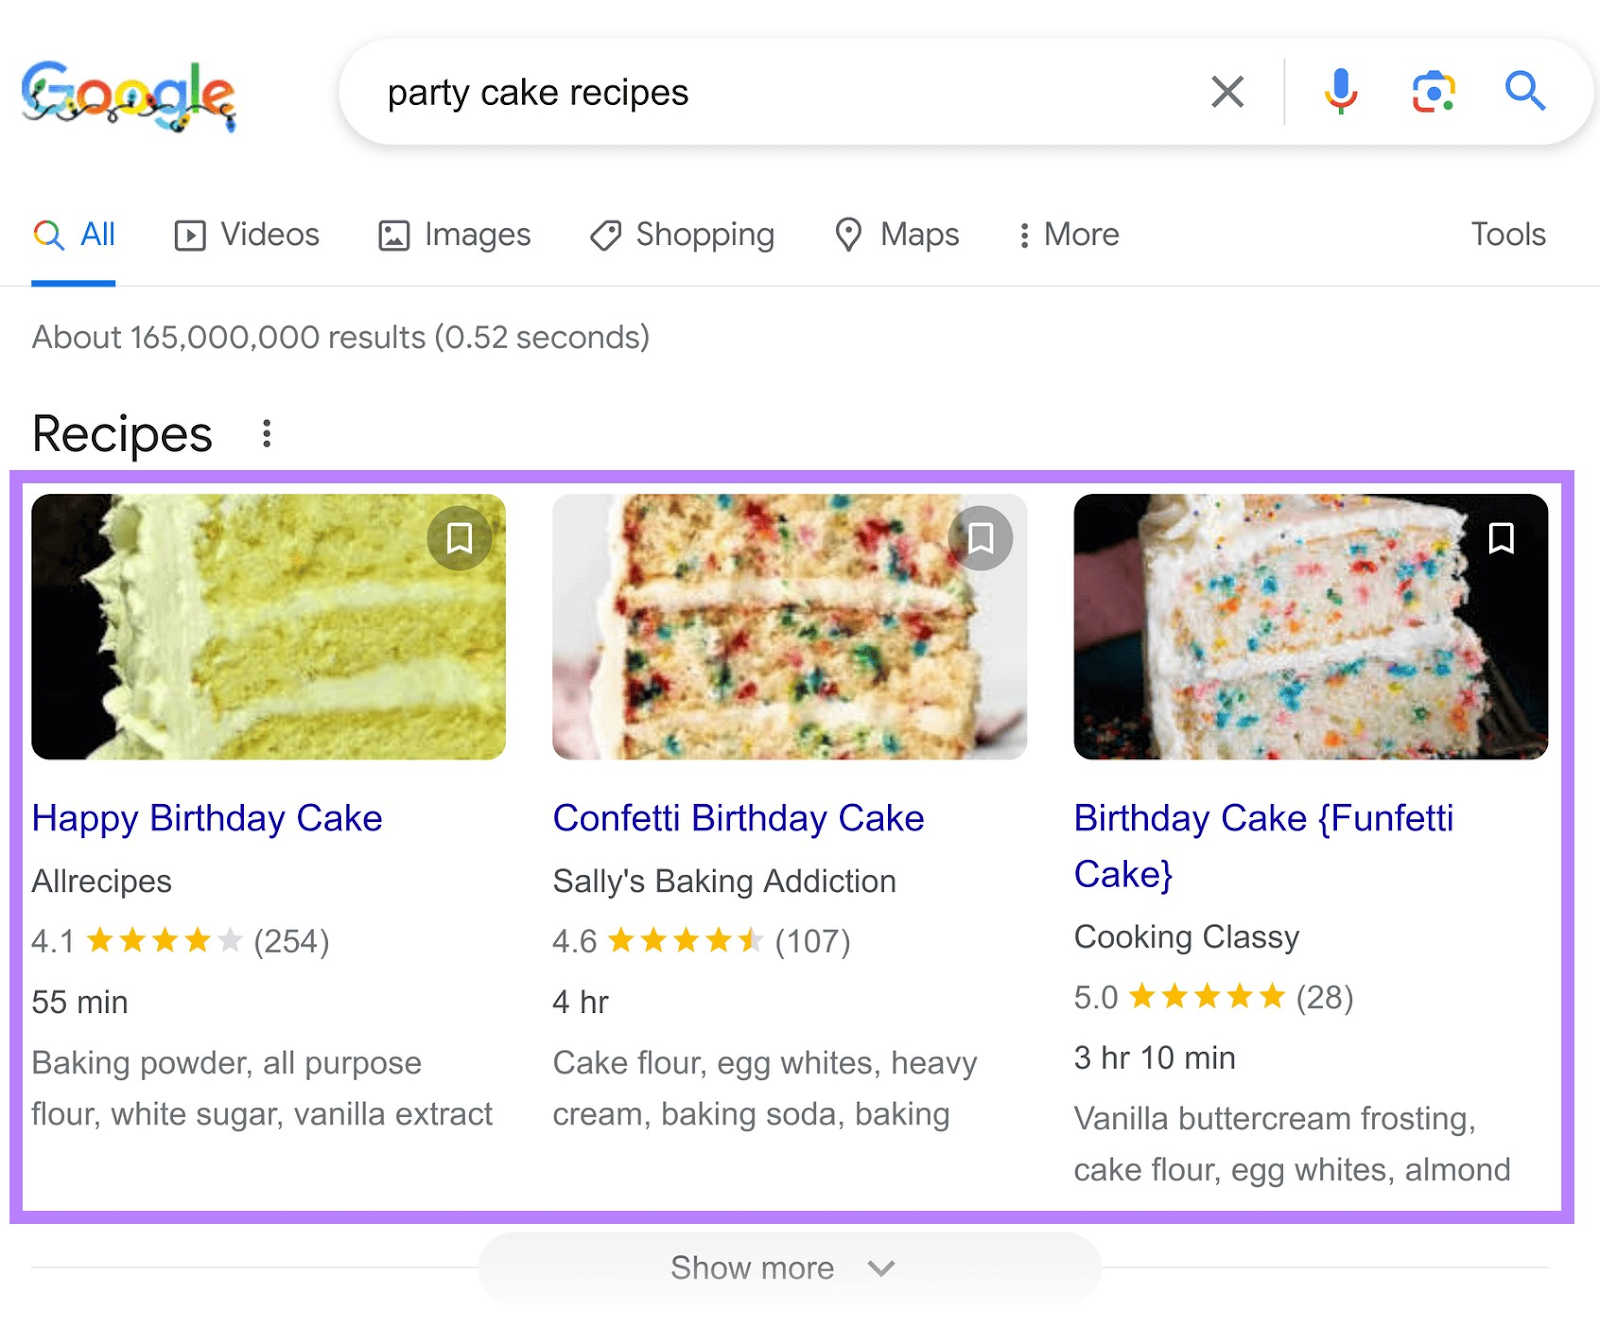 Résultats riches de Google pour les recettes de gâteaux de fête, y compris les images, le nombre d'étoiles, le nombre d'avis, le temps de cuisson et les ingrédients des recettes.